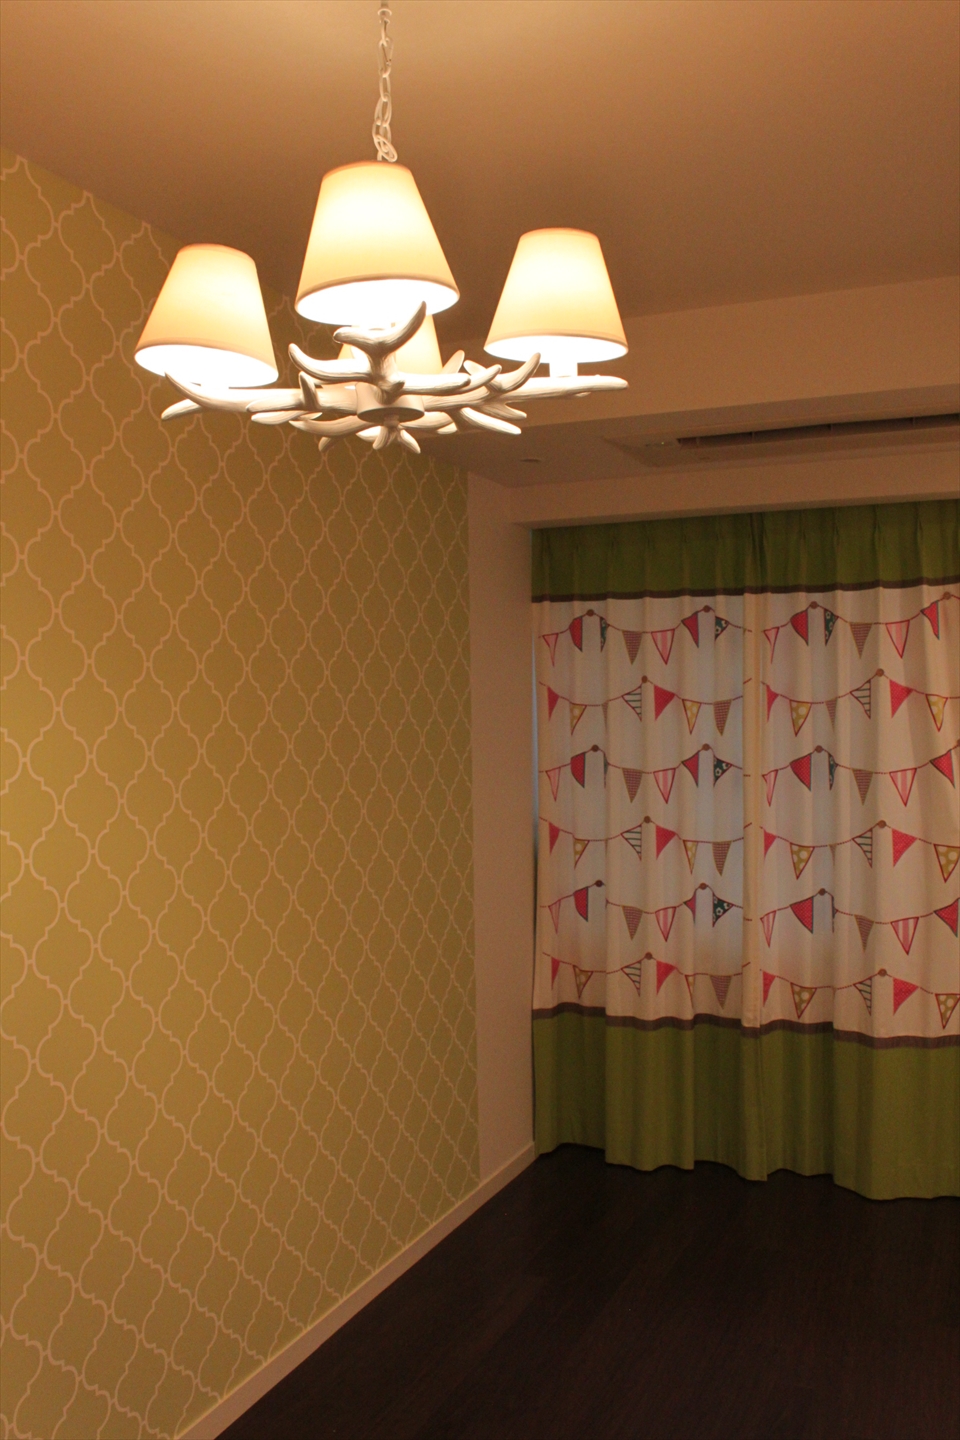 カーテン 壁紙と照明をコーディネートしたキッズルーム 東京や横浜で 輸入 オーダーカーテンの出張コーディネート オーブ